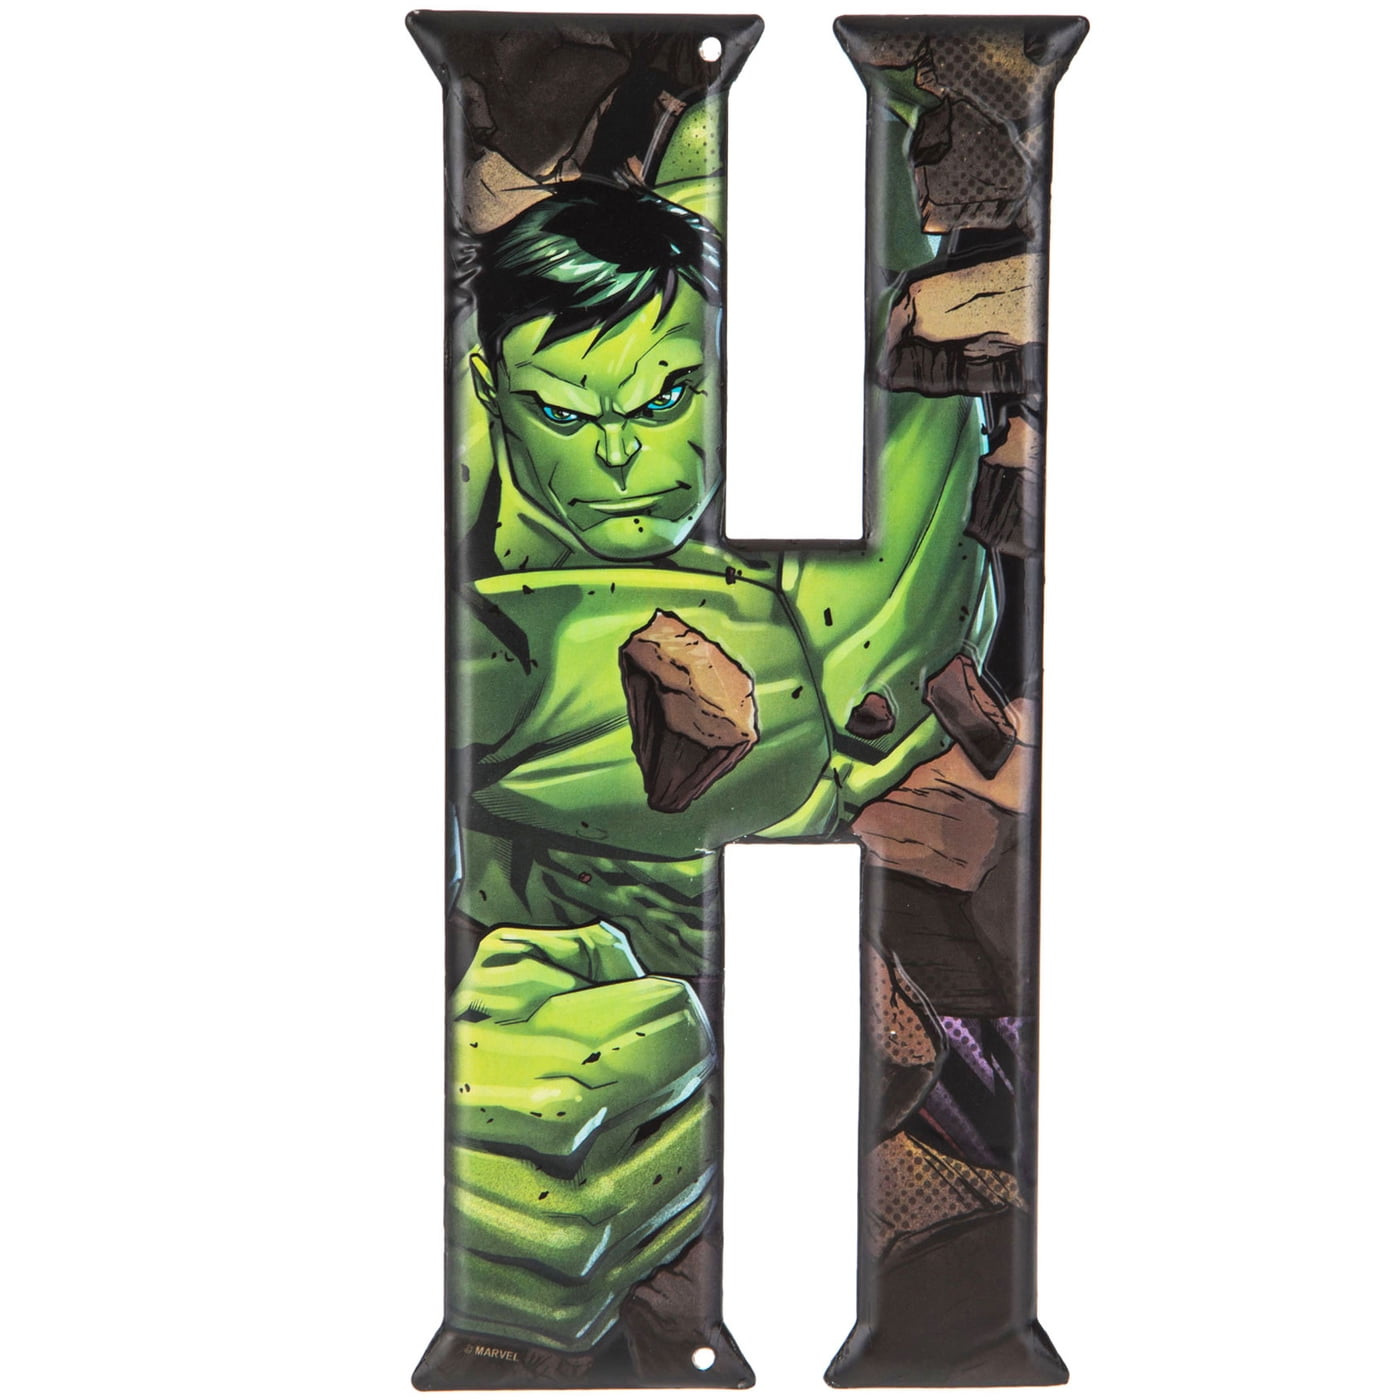 Personalised Hulk Bedroom Door Sign Superhero Decor Boys Gifts Kids Plaque Room 